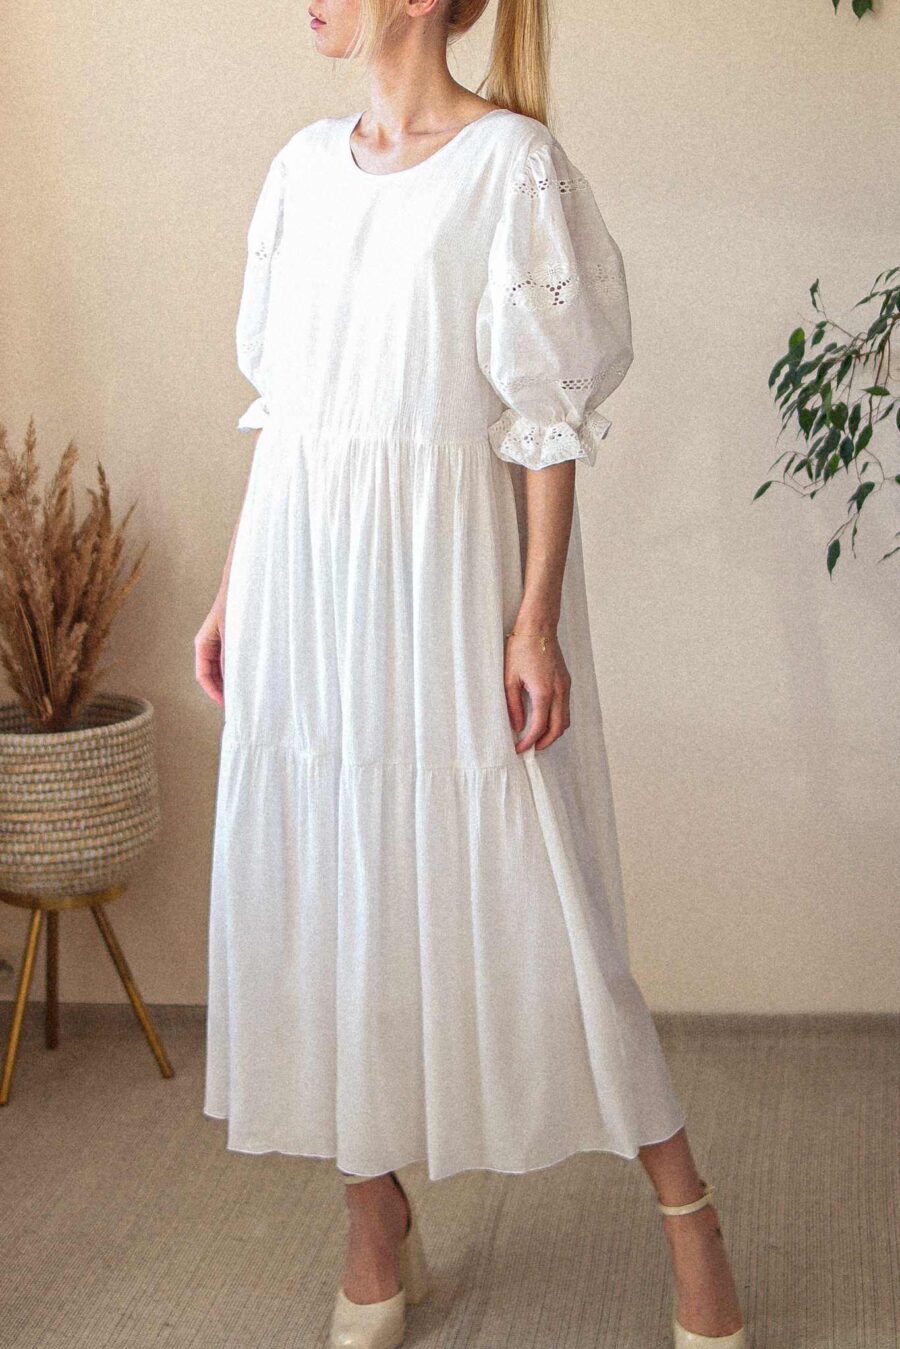 Calluna muślin - muślinowa sukienka z ażurowymi rękawkami